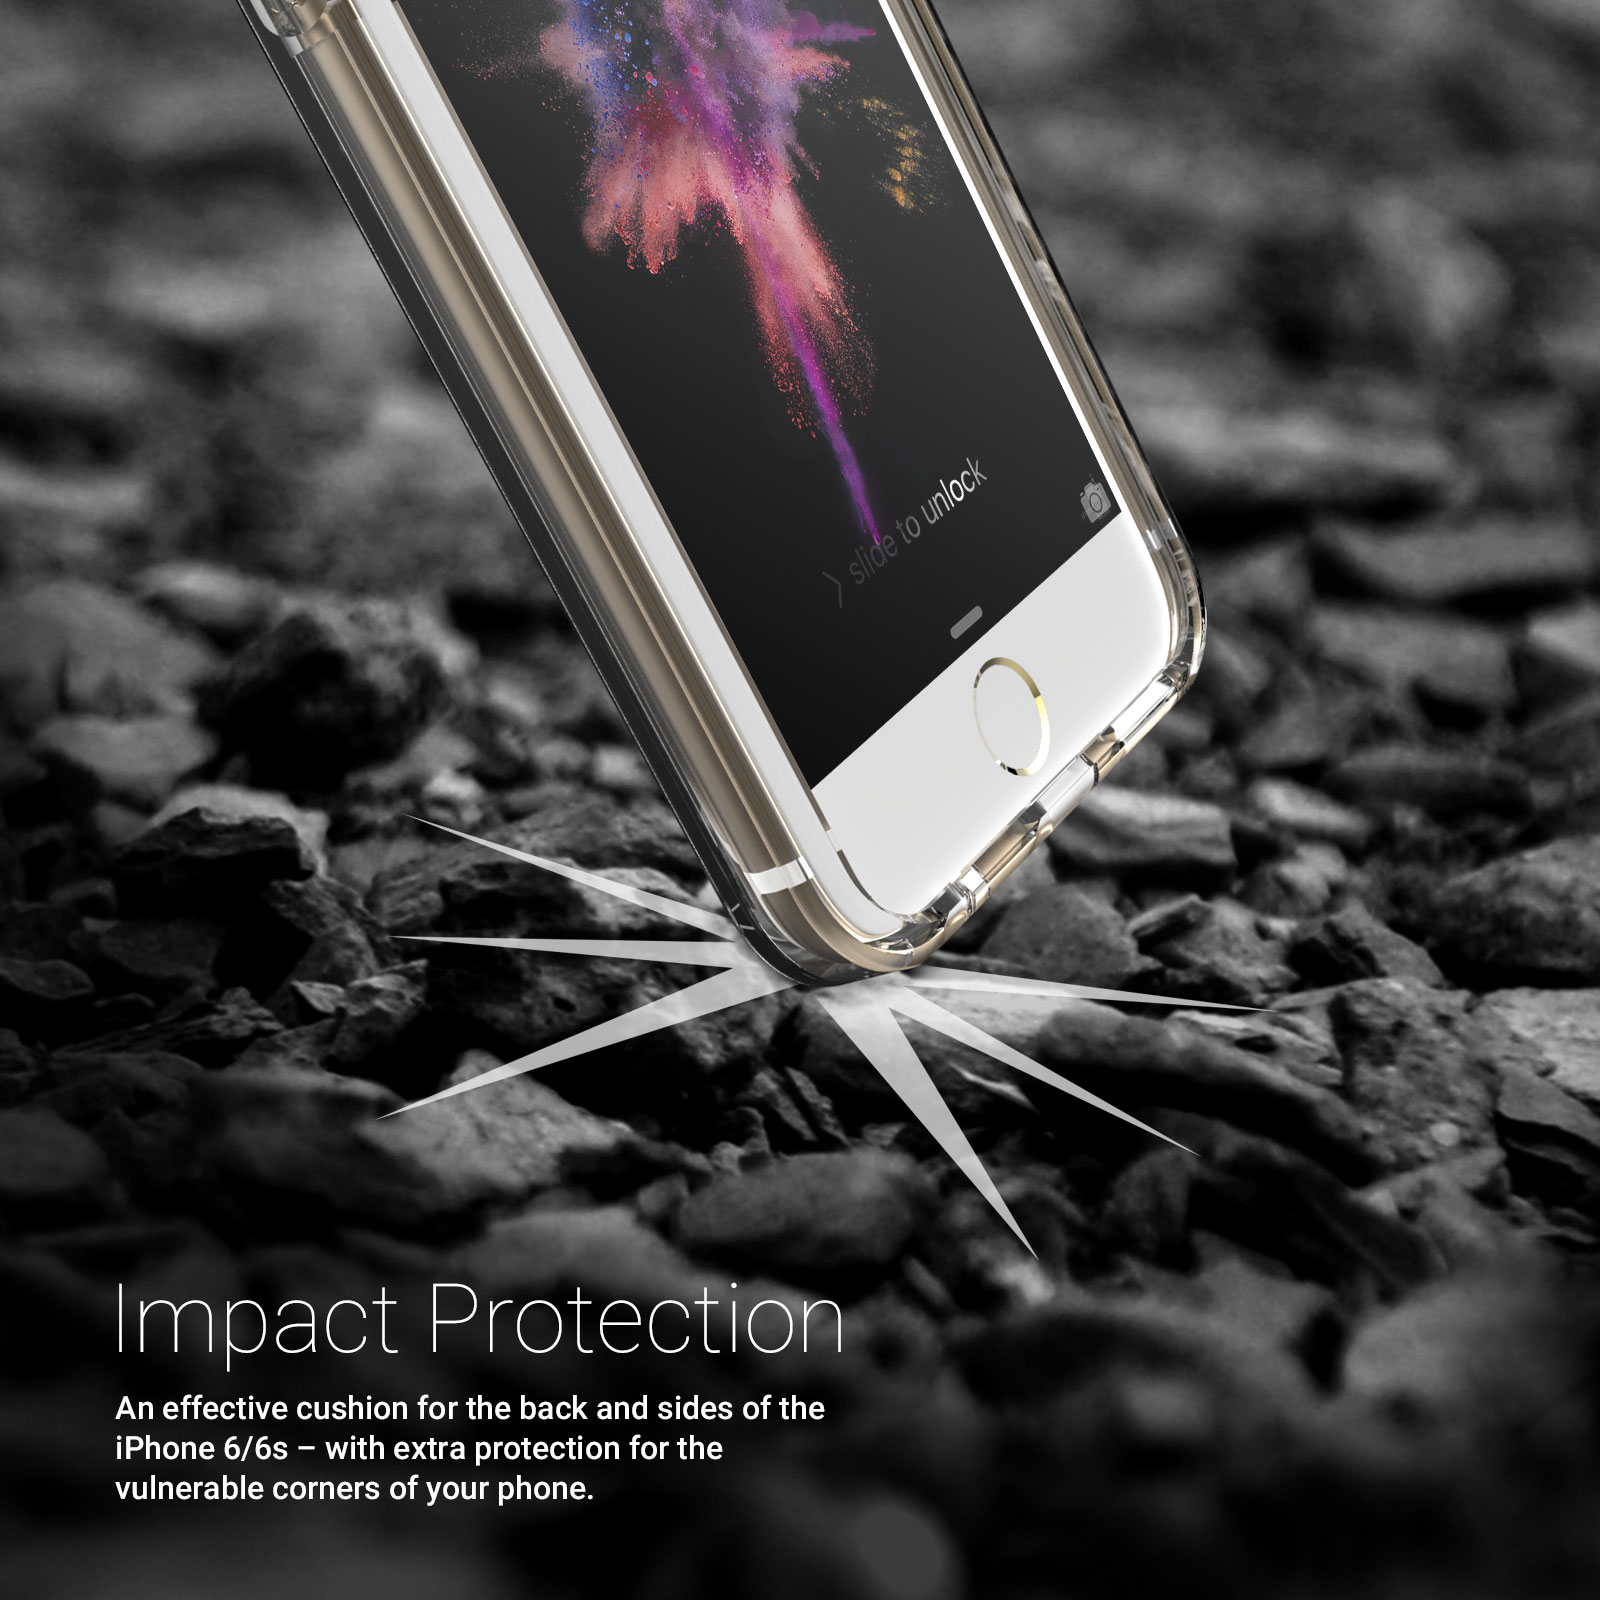 Caseflex iPhone 6 / 6s Reinforced TPU Gel Case - Clear